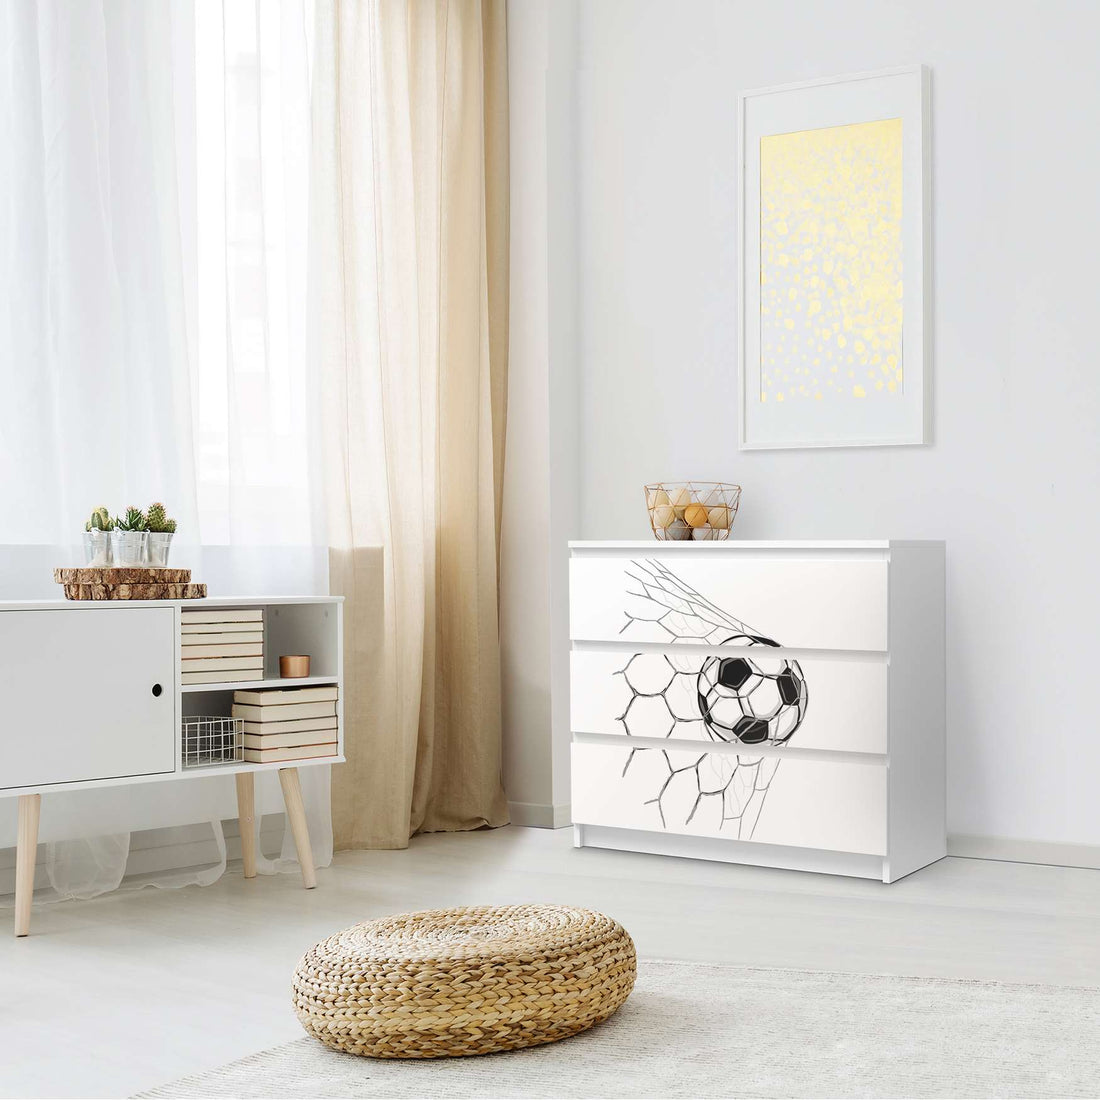 Klebefolie für Möbel Eingenetzt - IKEA Malm Kommode 3 Schubladen - Schlafzimmer